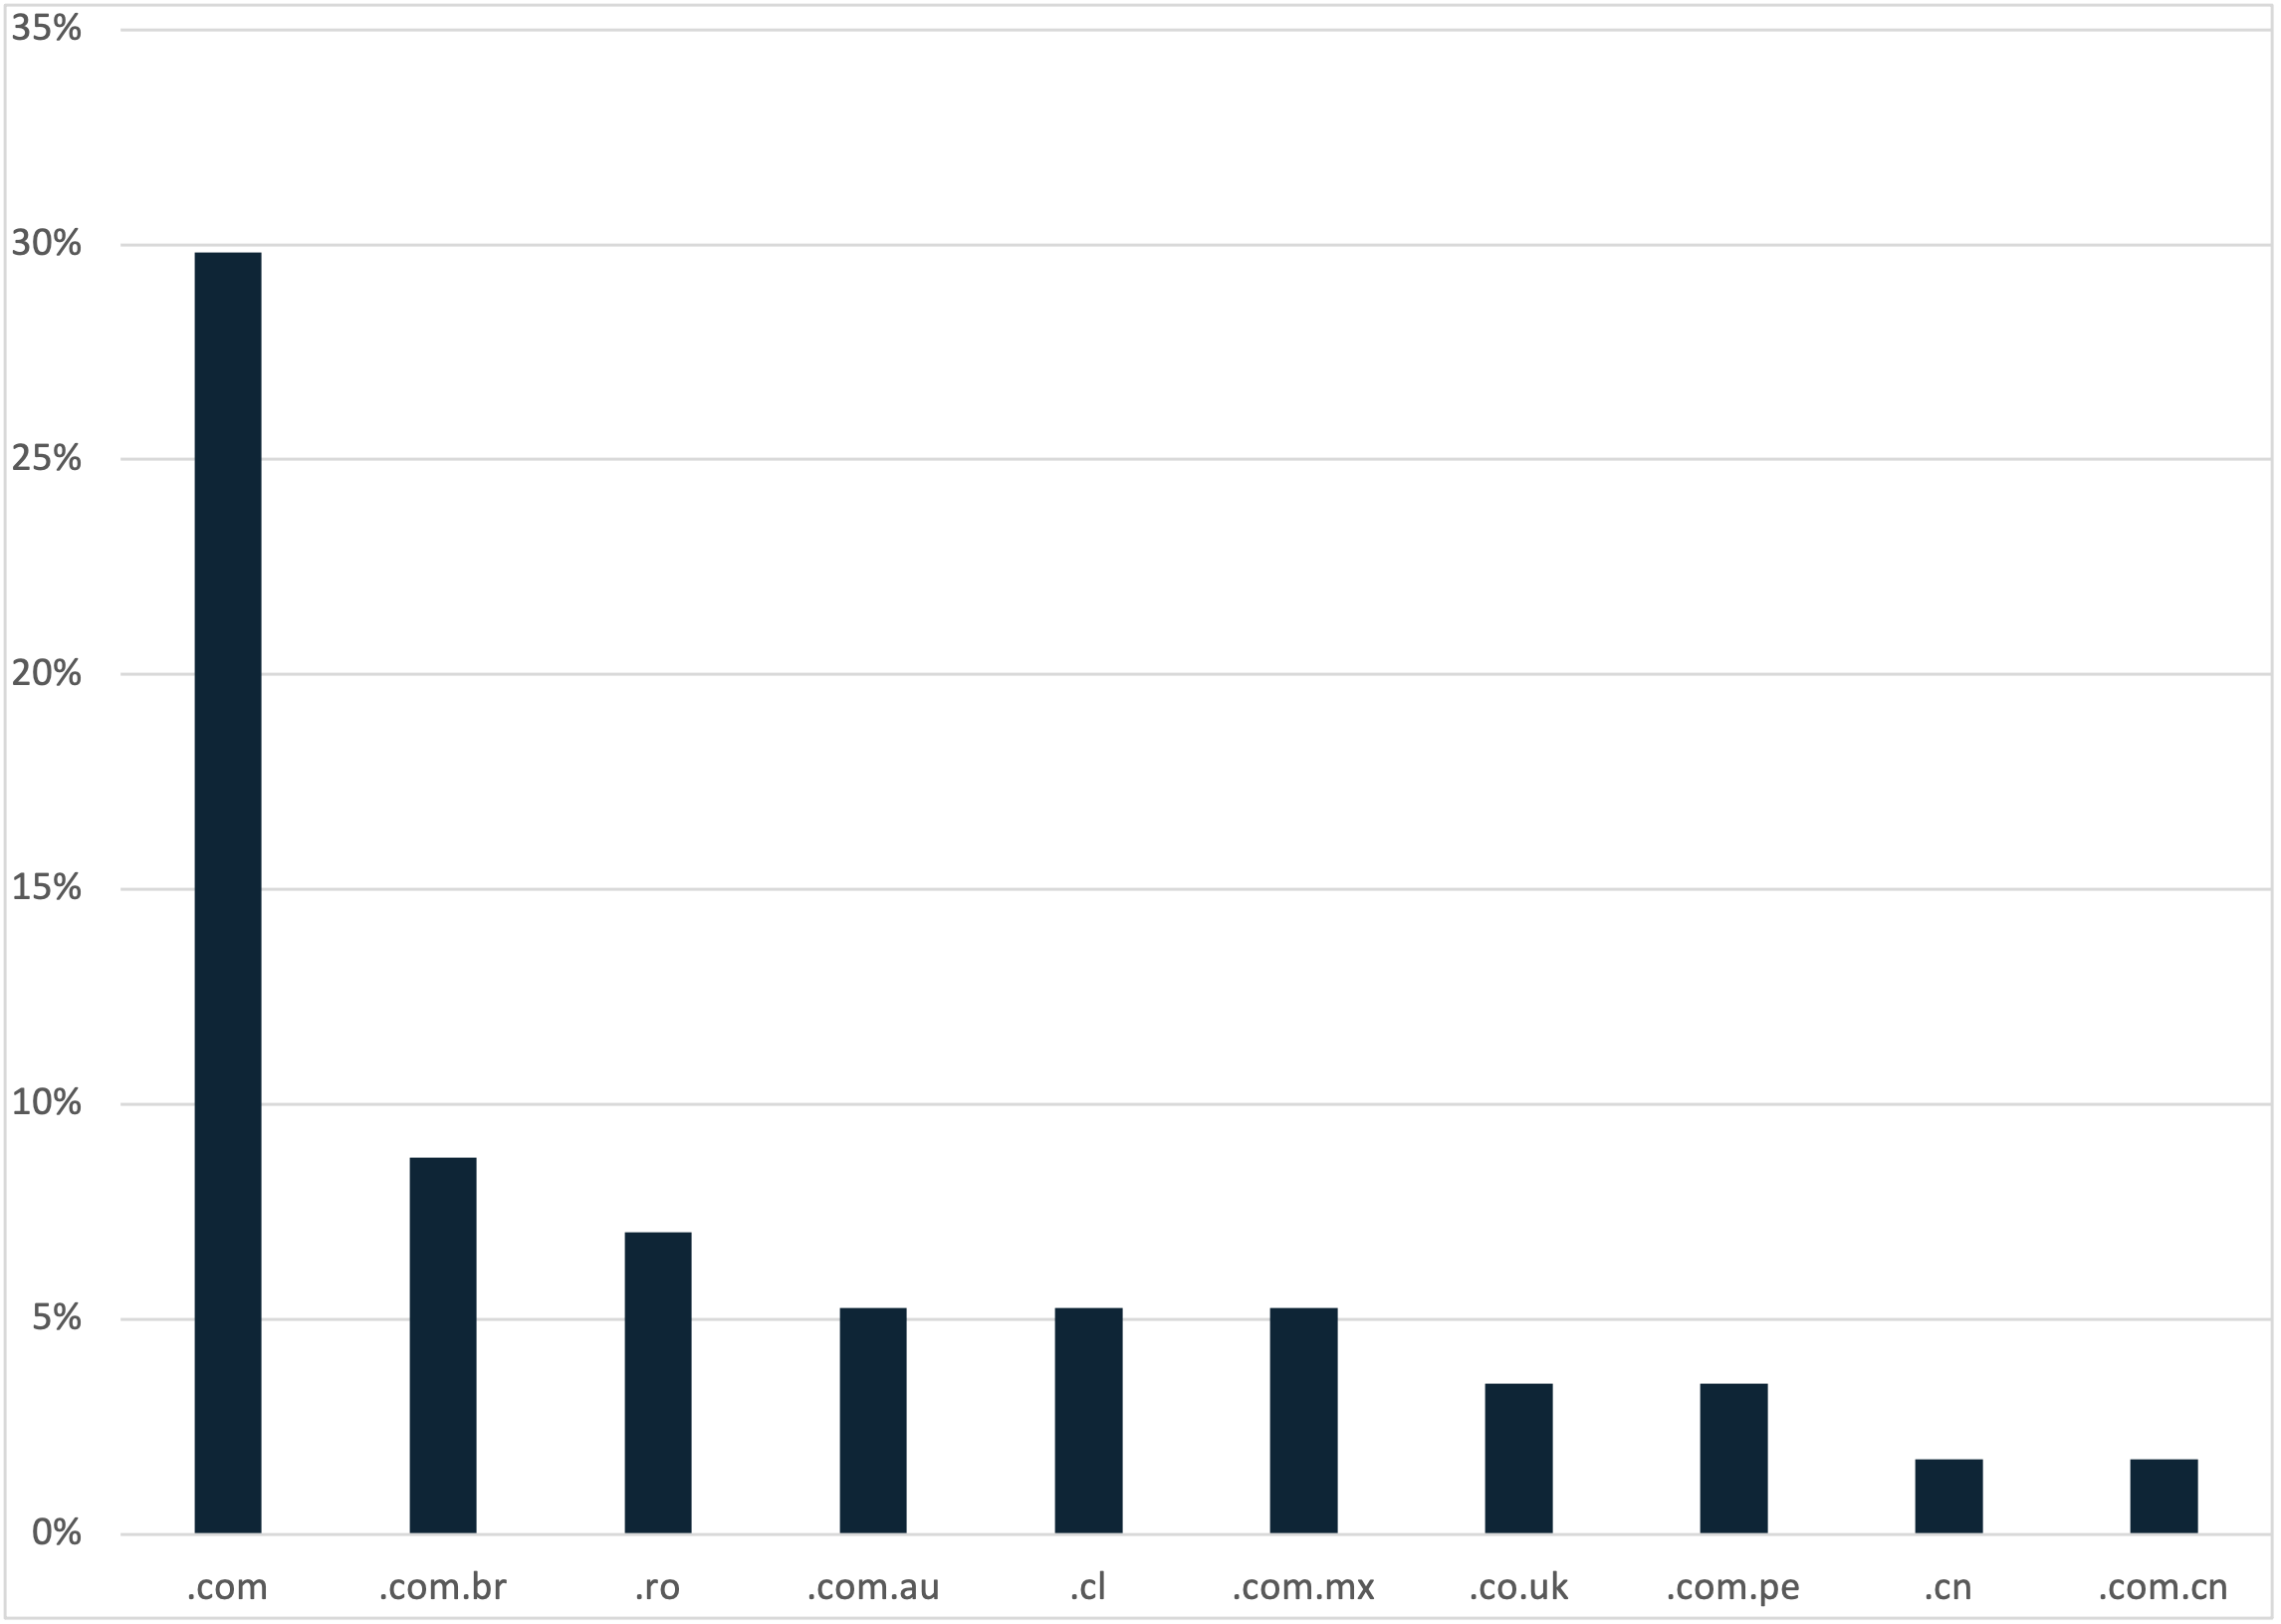 Abbildung 2: Prozentualer Anteil der TLDs in vom Bedrohungsakteur erstellten Domains. 